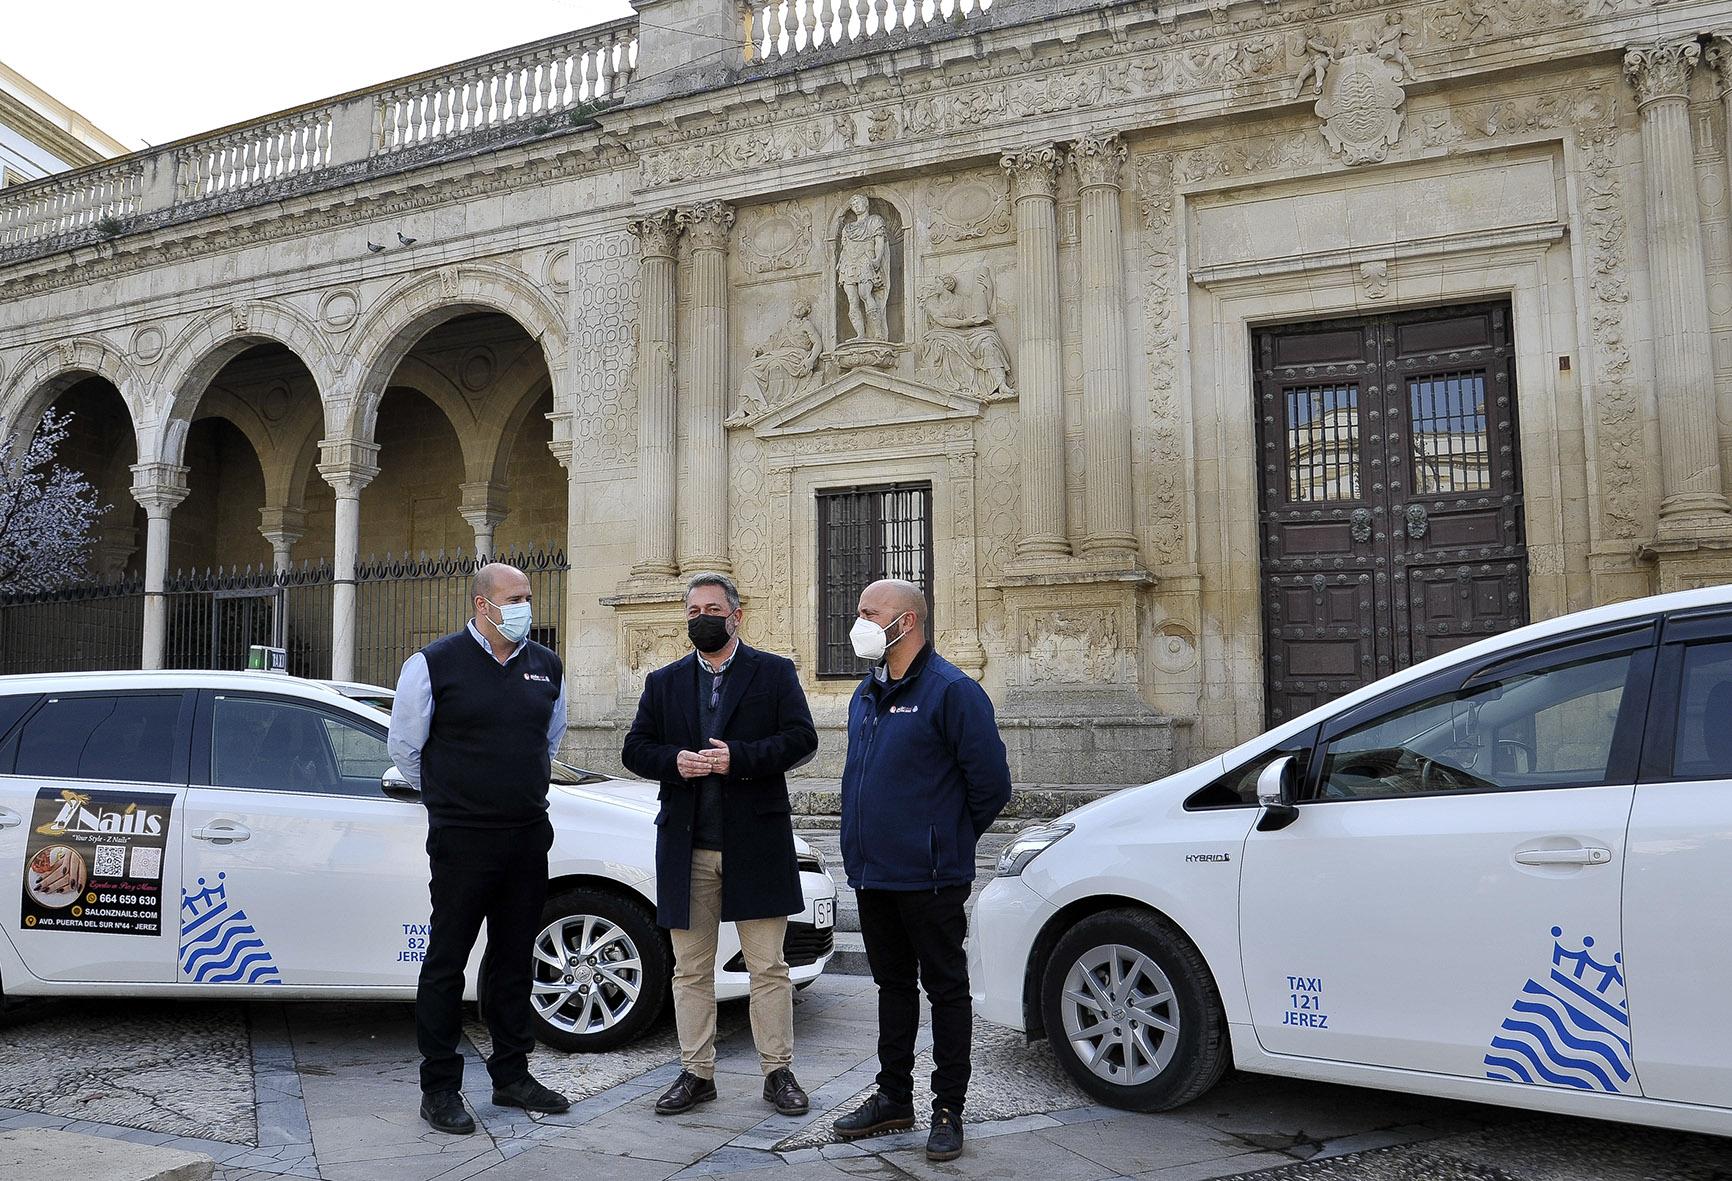 Nueva identidad corporativa del servicio de taxi en Jerez